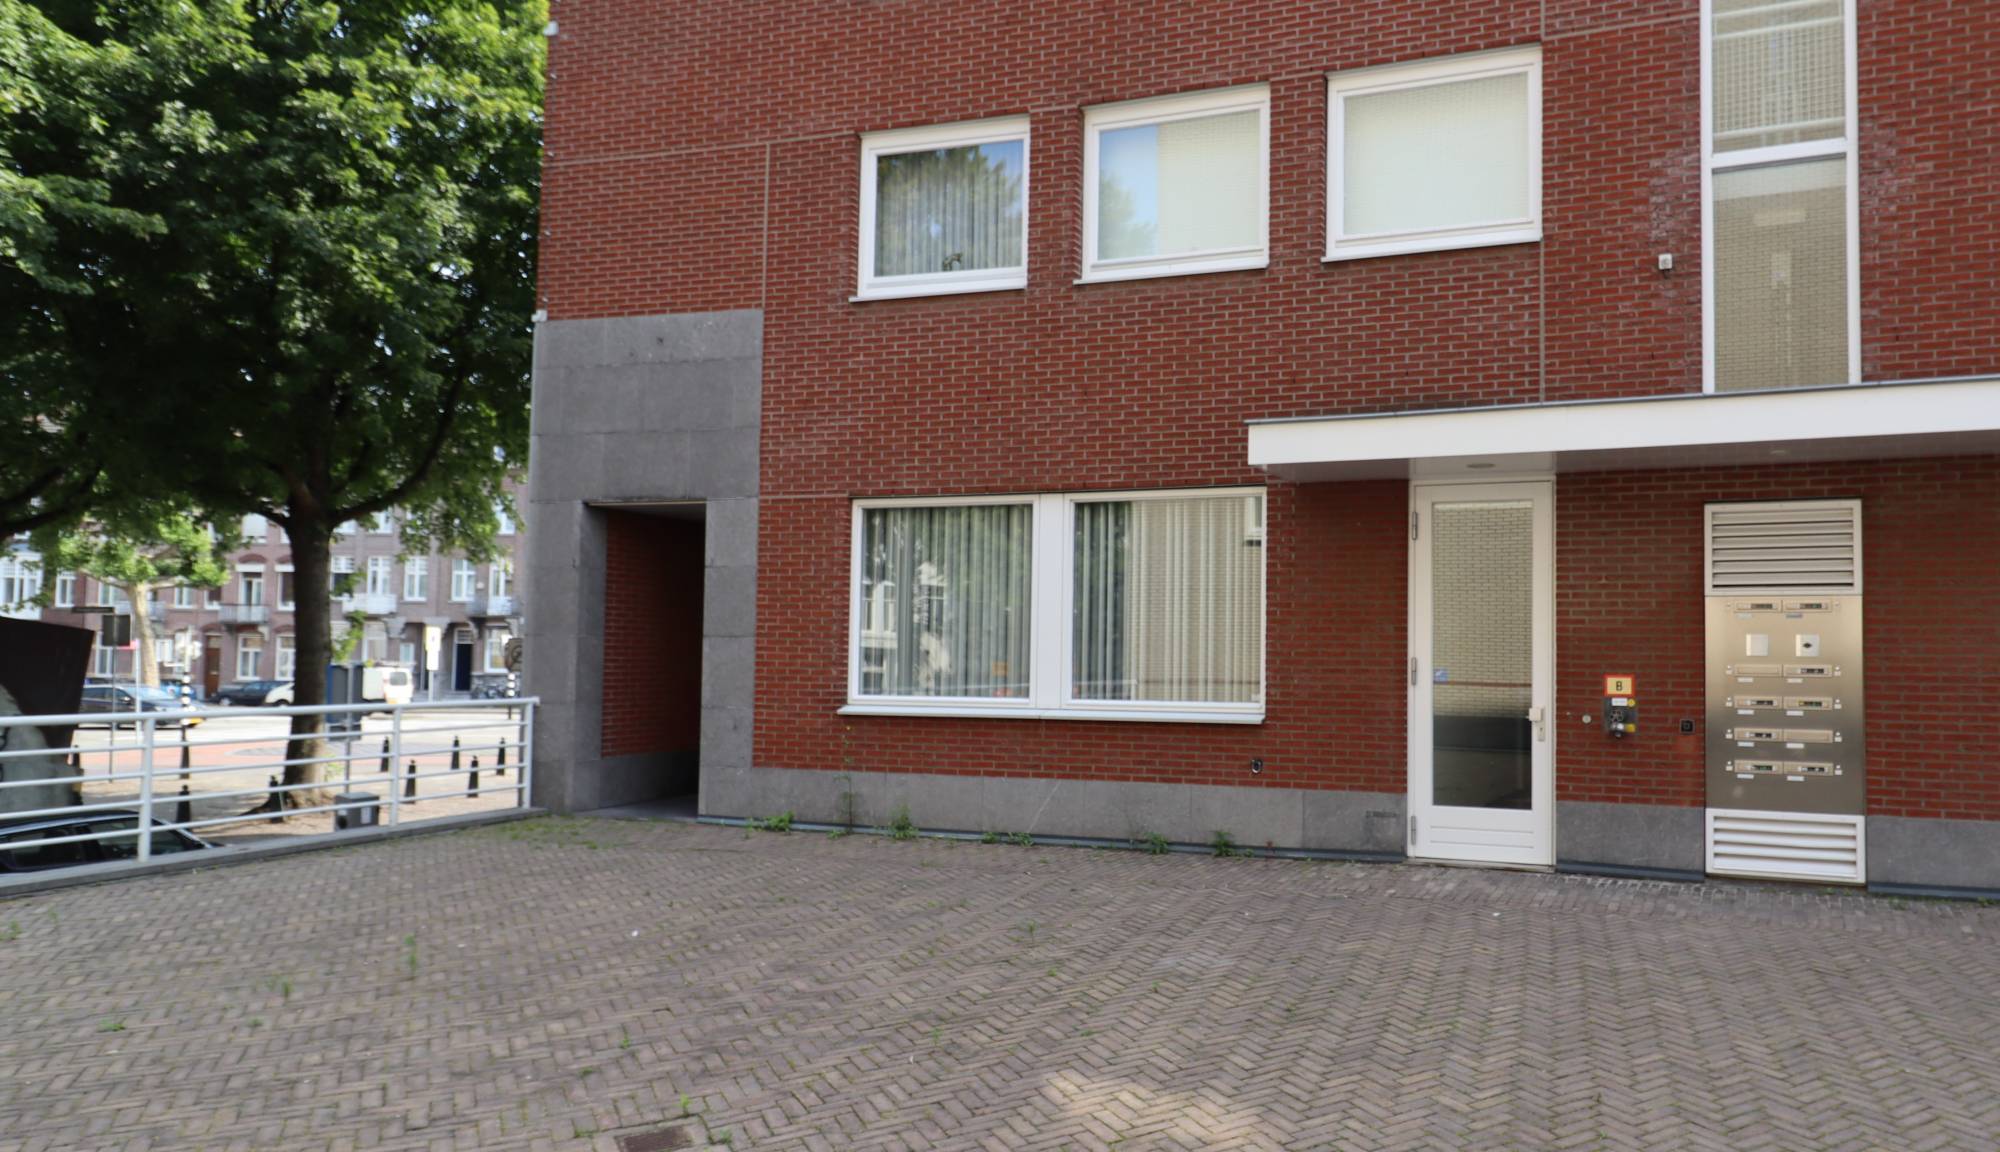 Bekijk foto 1/29 van apartment in Maastricht